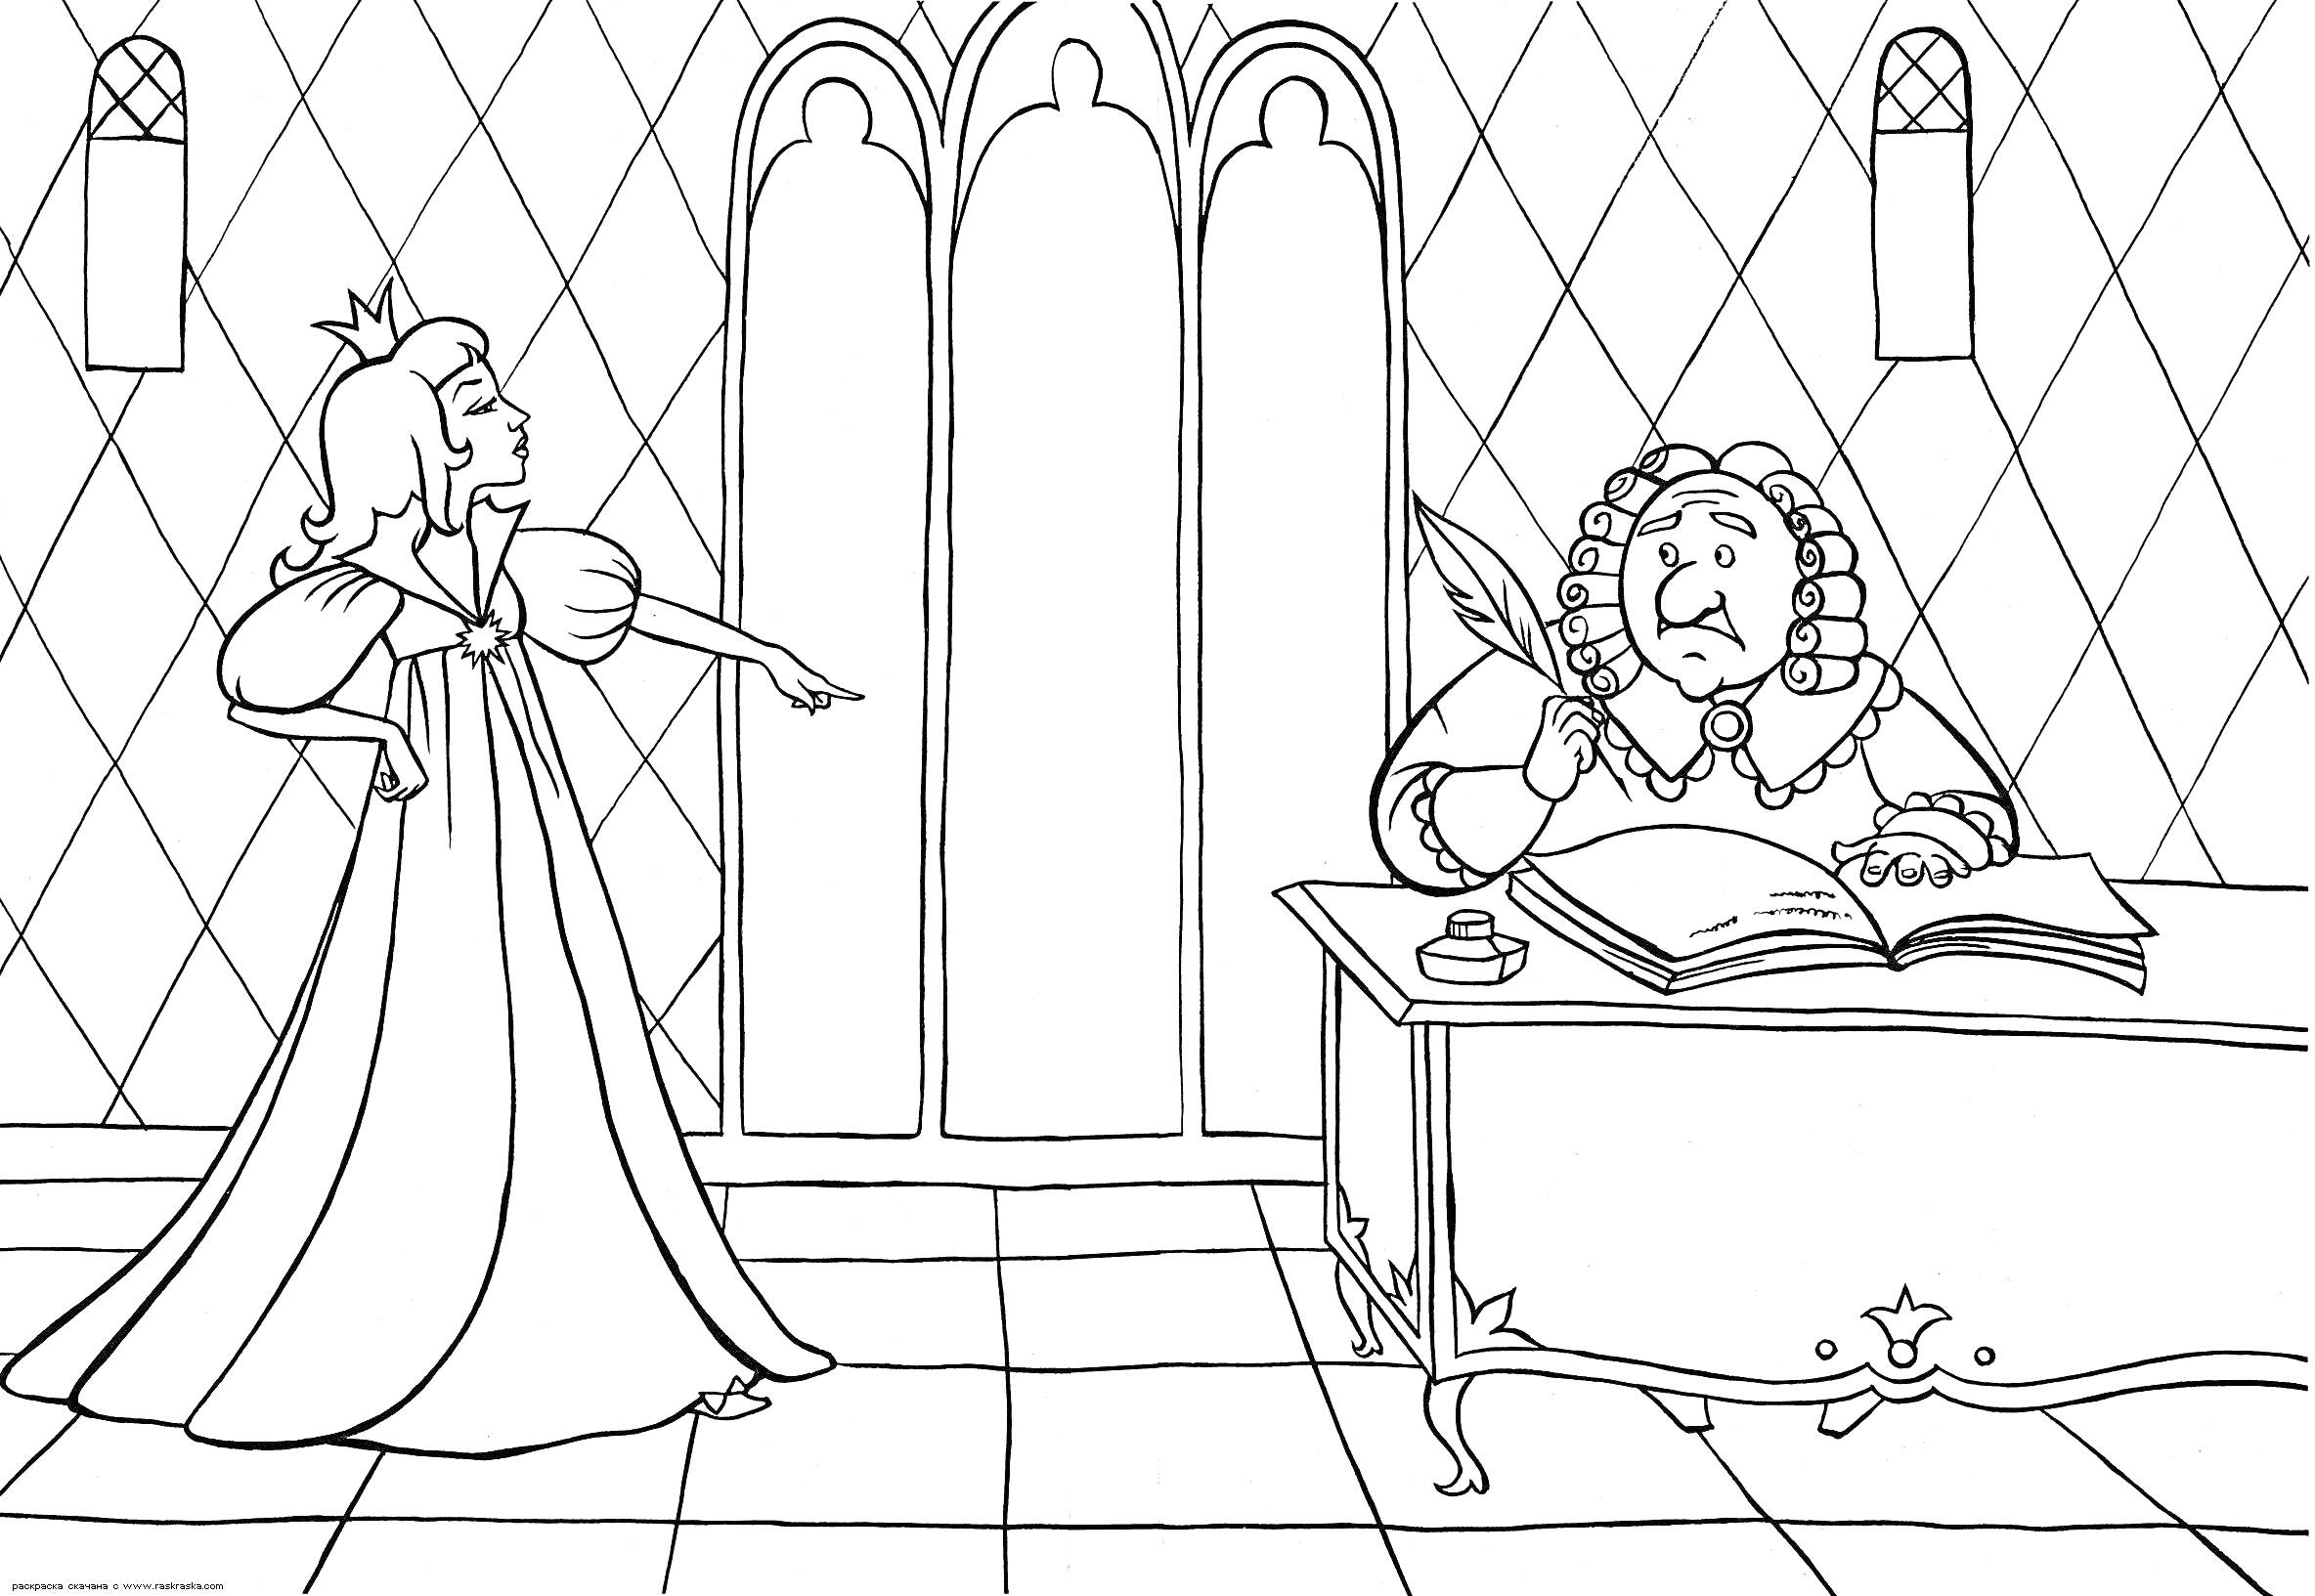 Королева разговаривает со старым писарем за столом в замке